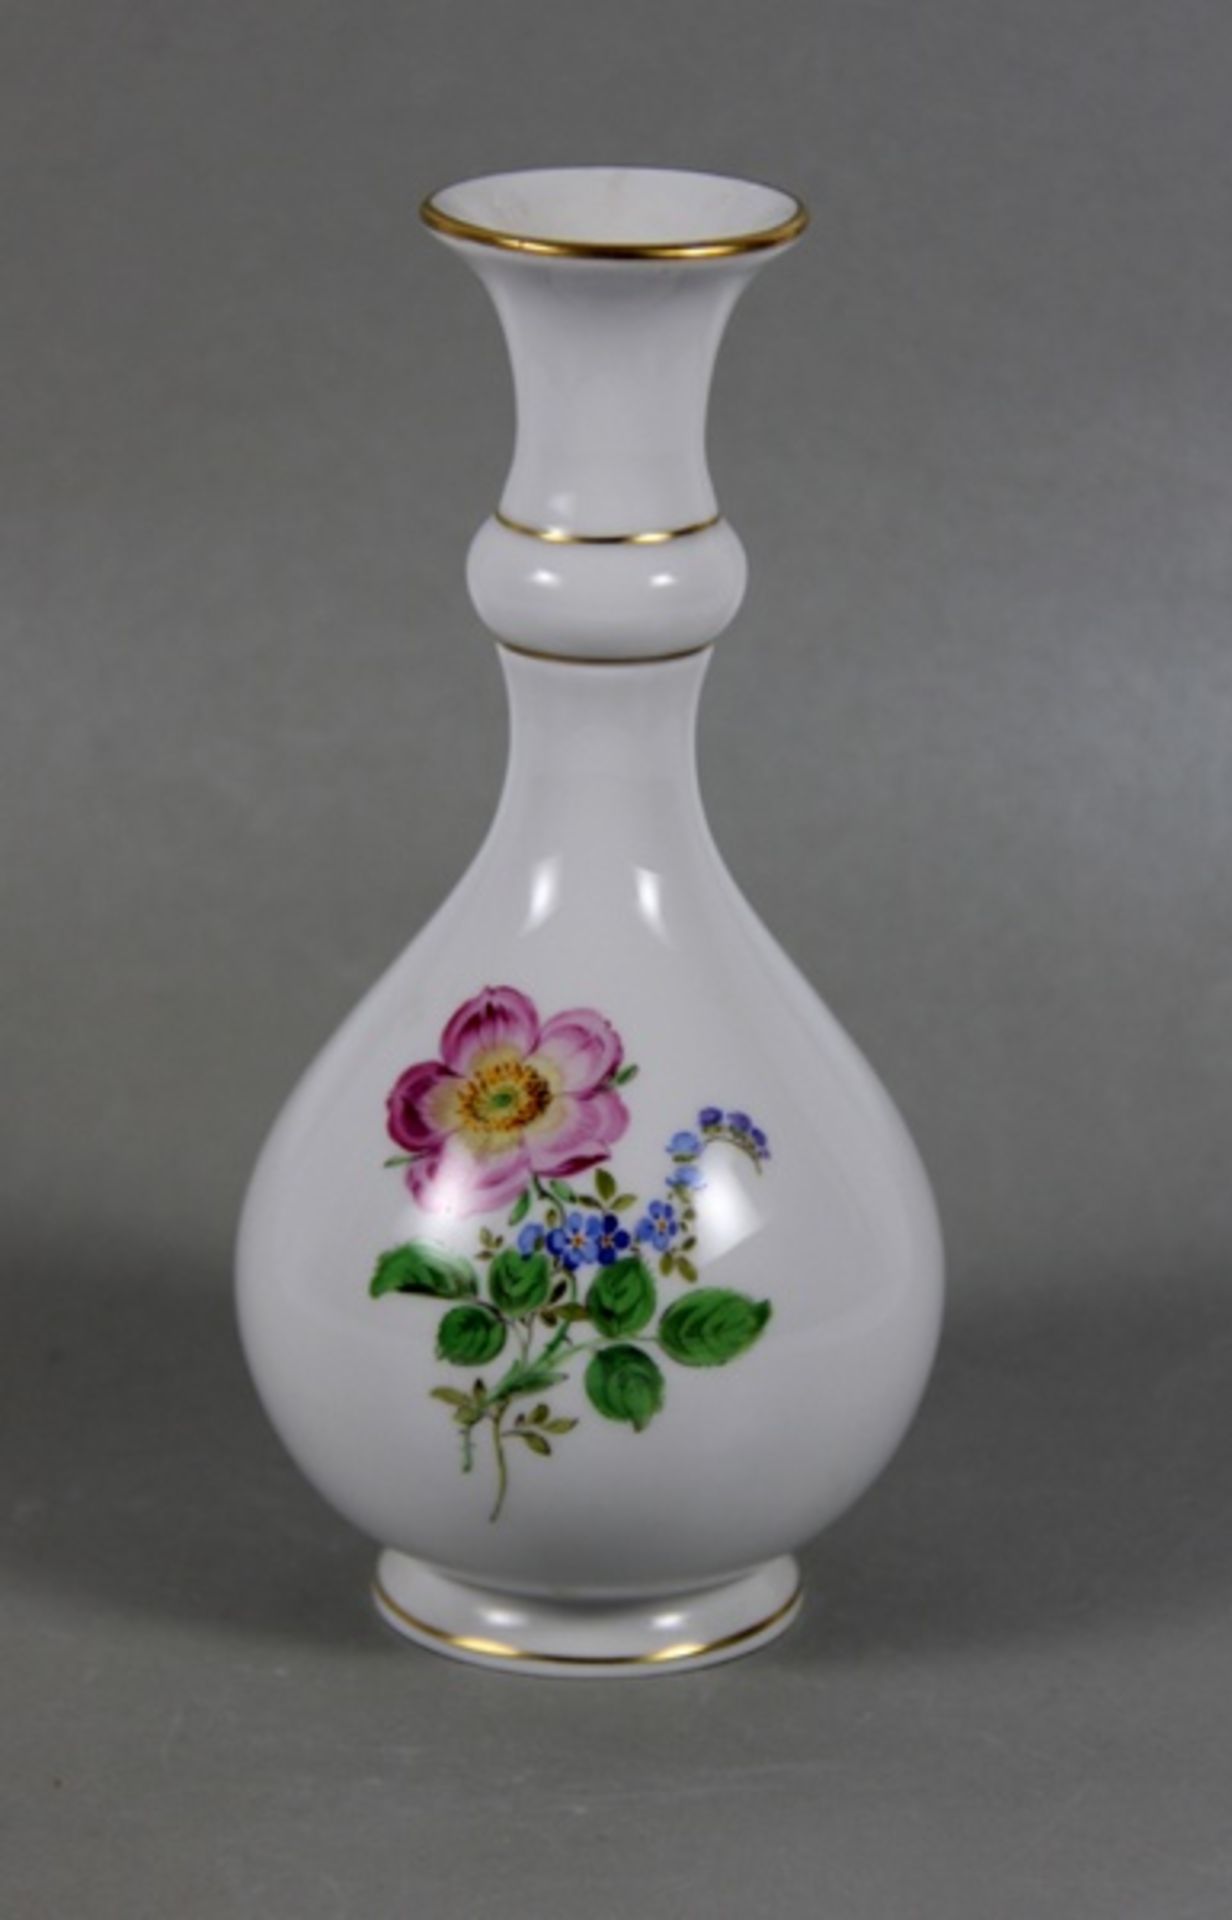 Meissen-VaseMeissen, Porzellanvase mit bunten Blüten, Goldränder, bauchiger Korpus unter schmalem